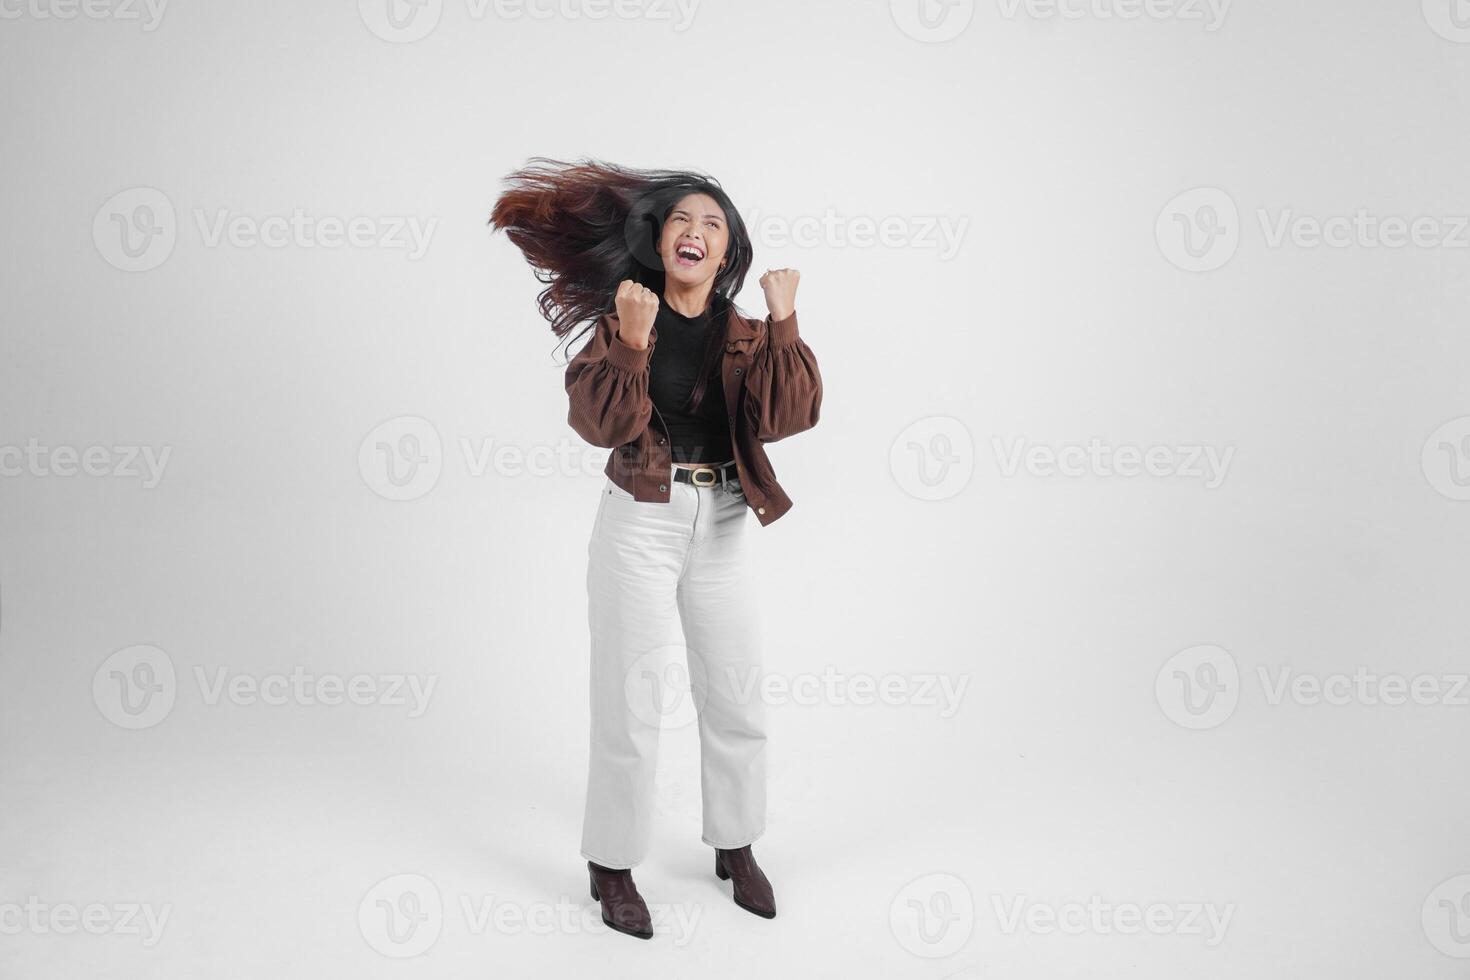 actief Aziatisch meisje is jumping en verhogen handen omhoog slijtage bruin jasje, geïsoleerd wit kleur achtergrond foto